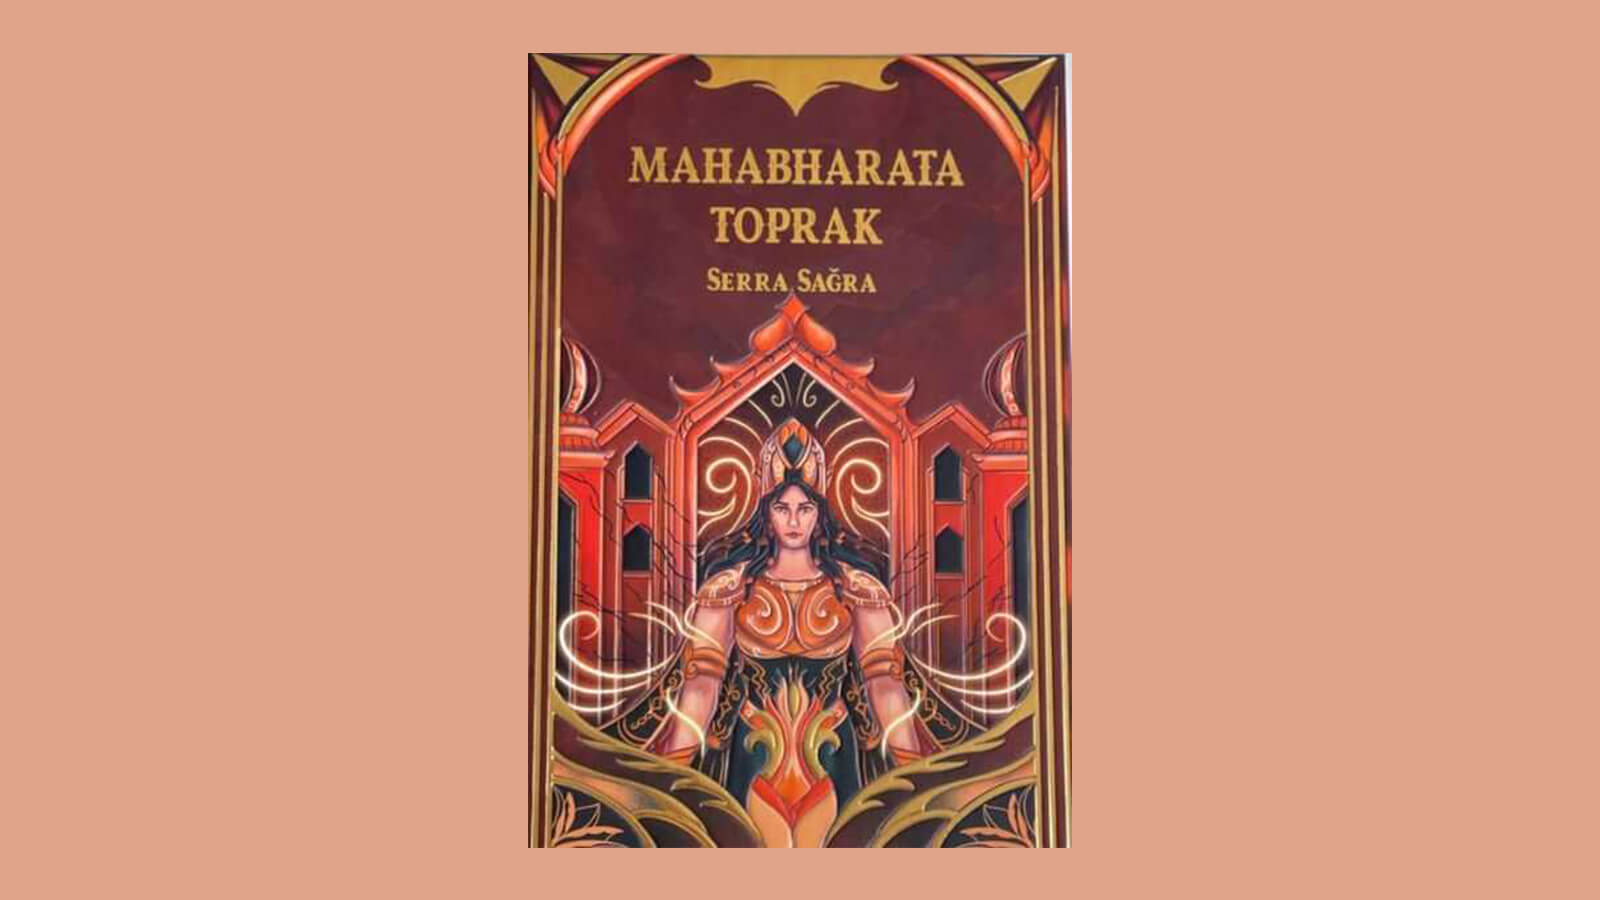 Mahabharata Toprak